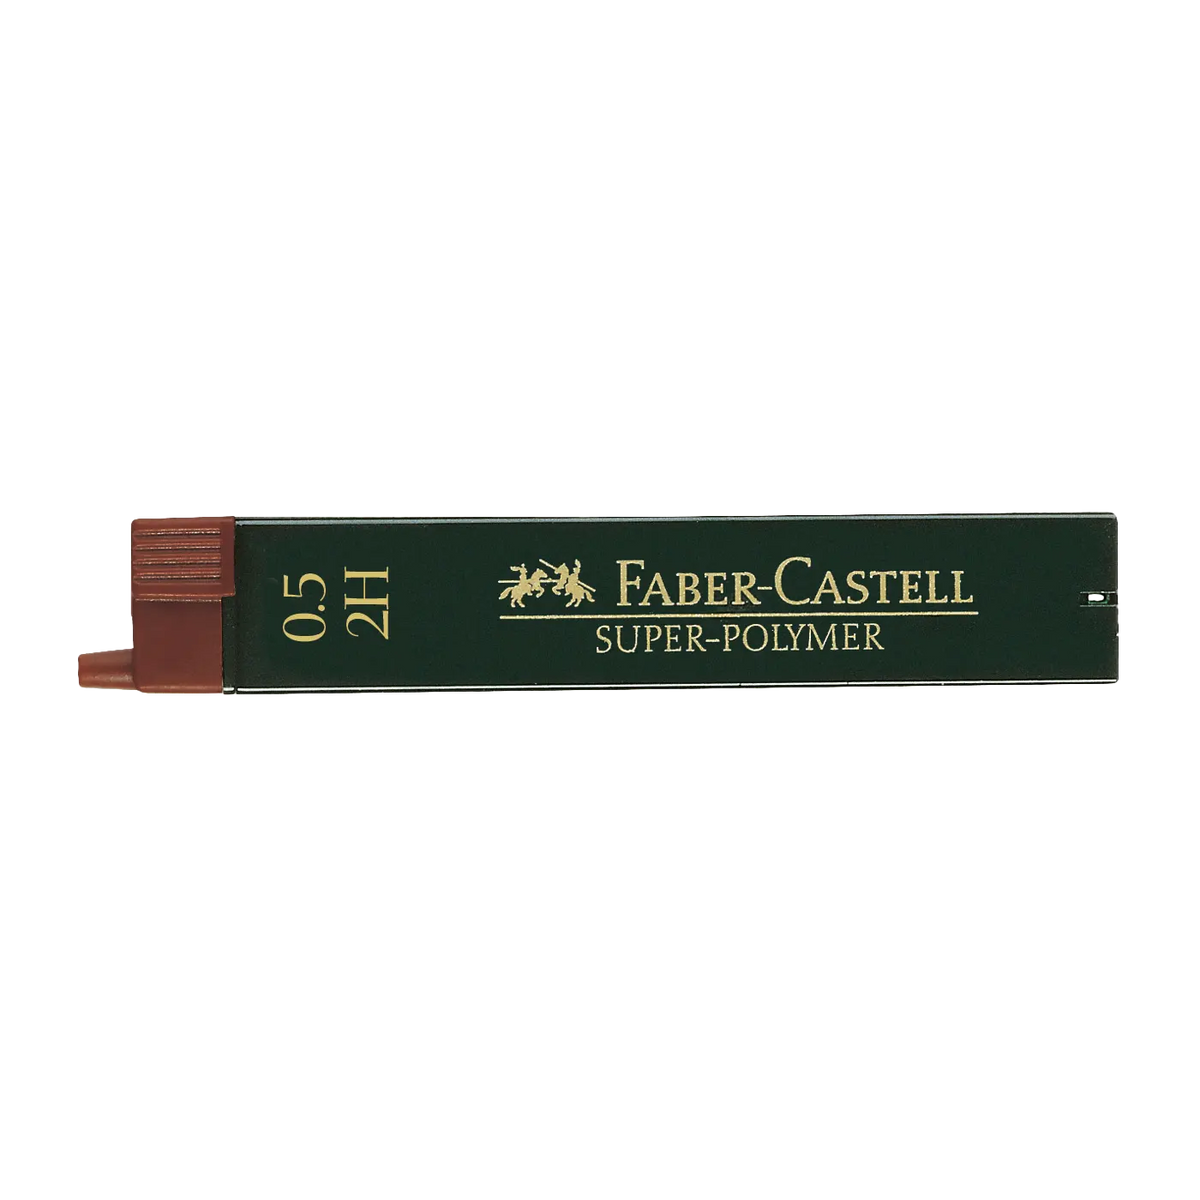 Faber Castell / Feinmine / Super-Polymer / 0,5mm / 2H